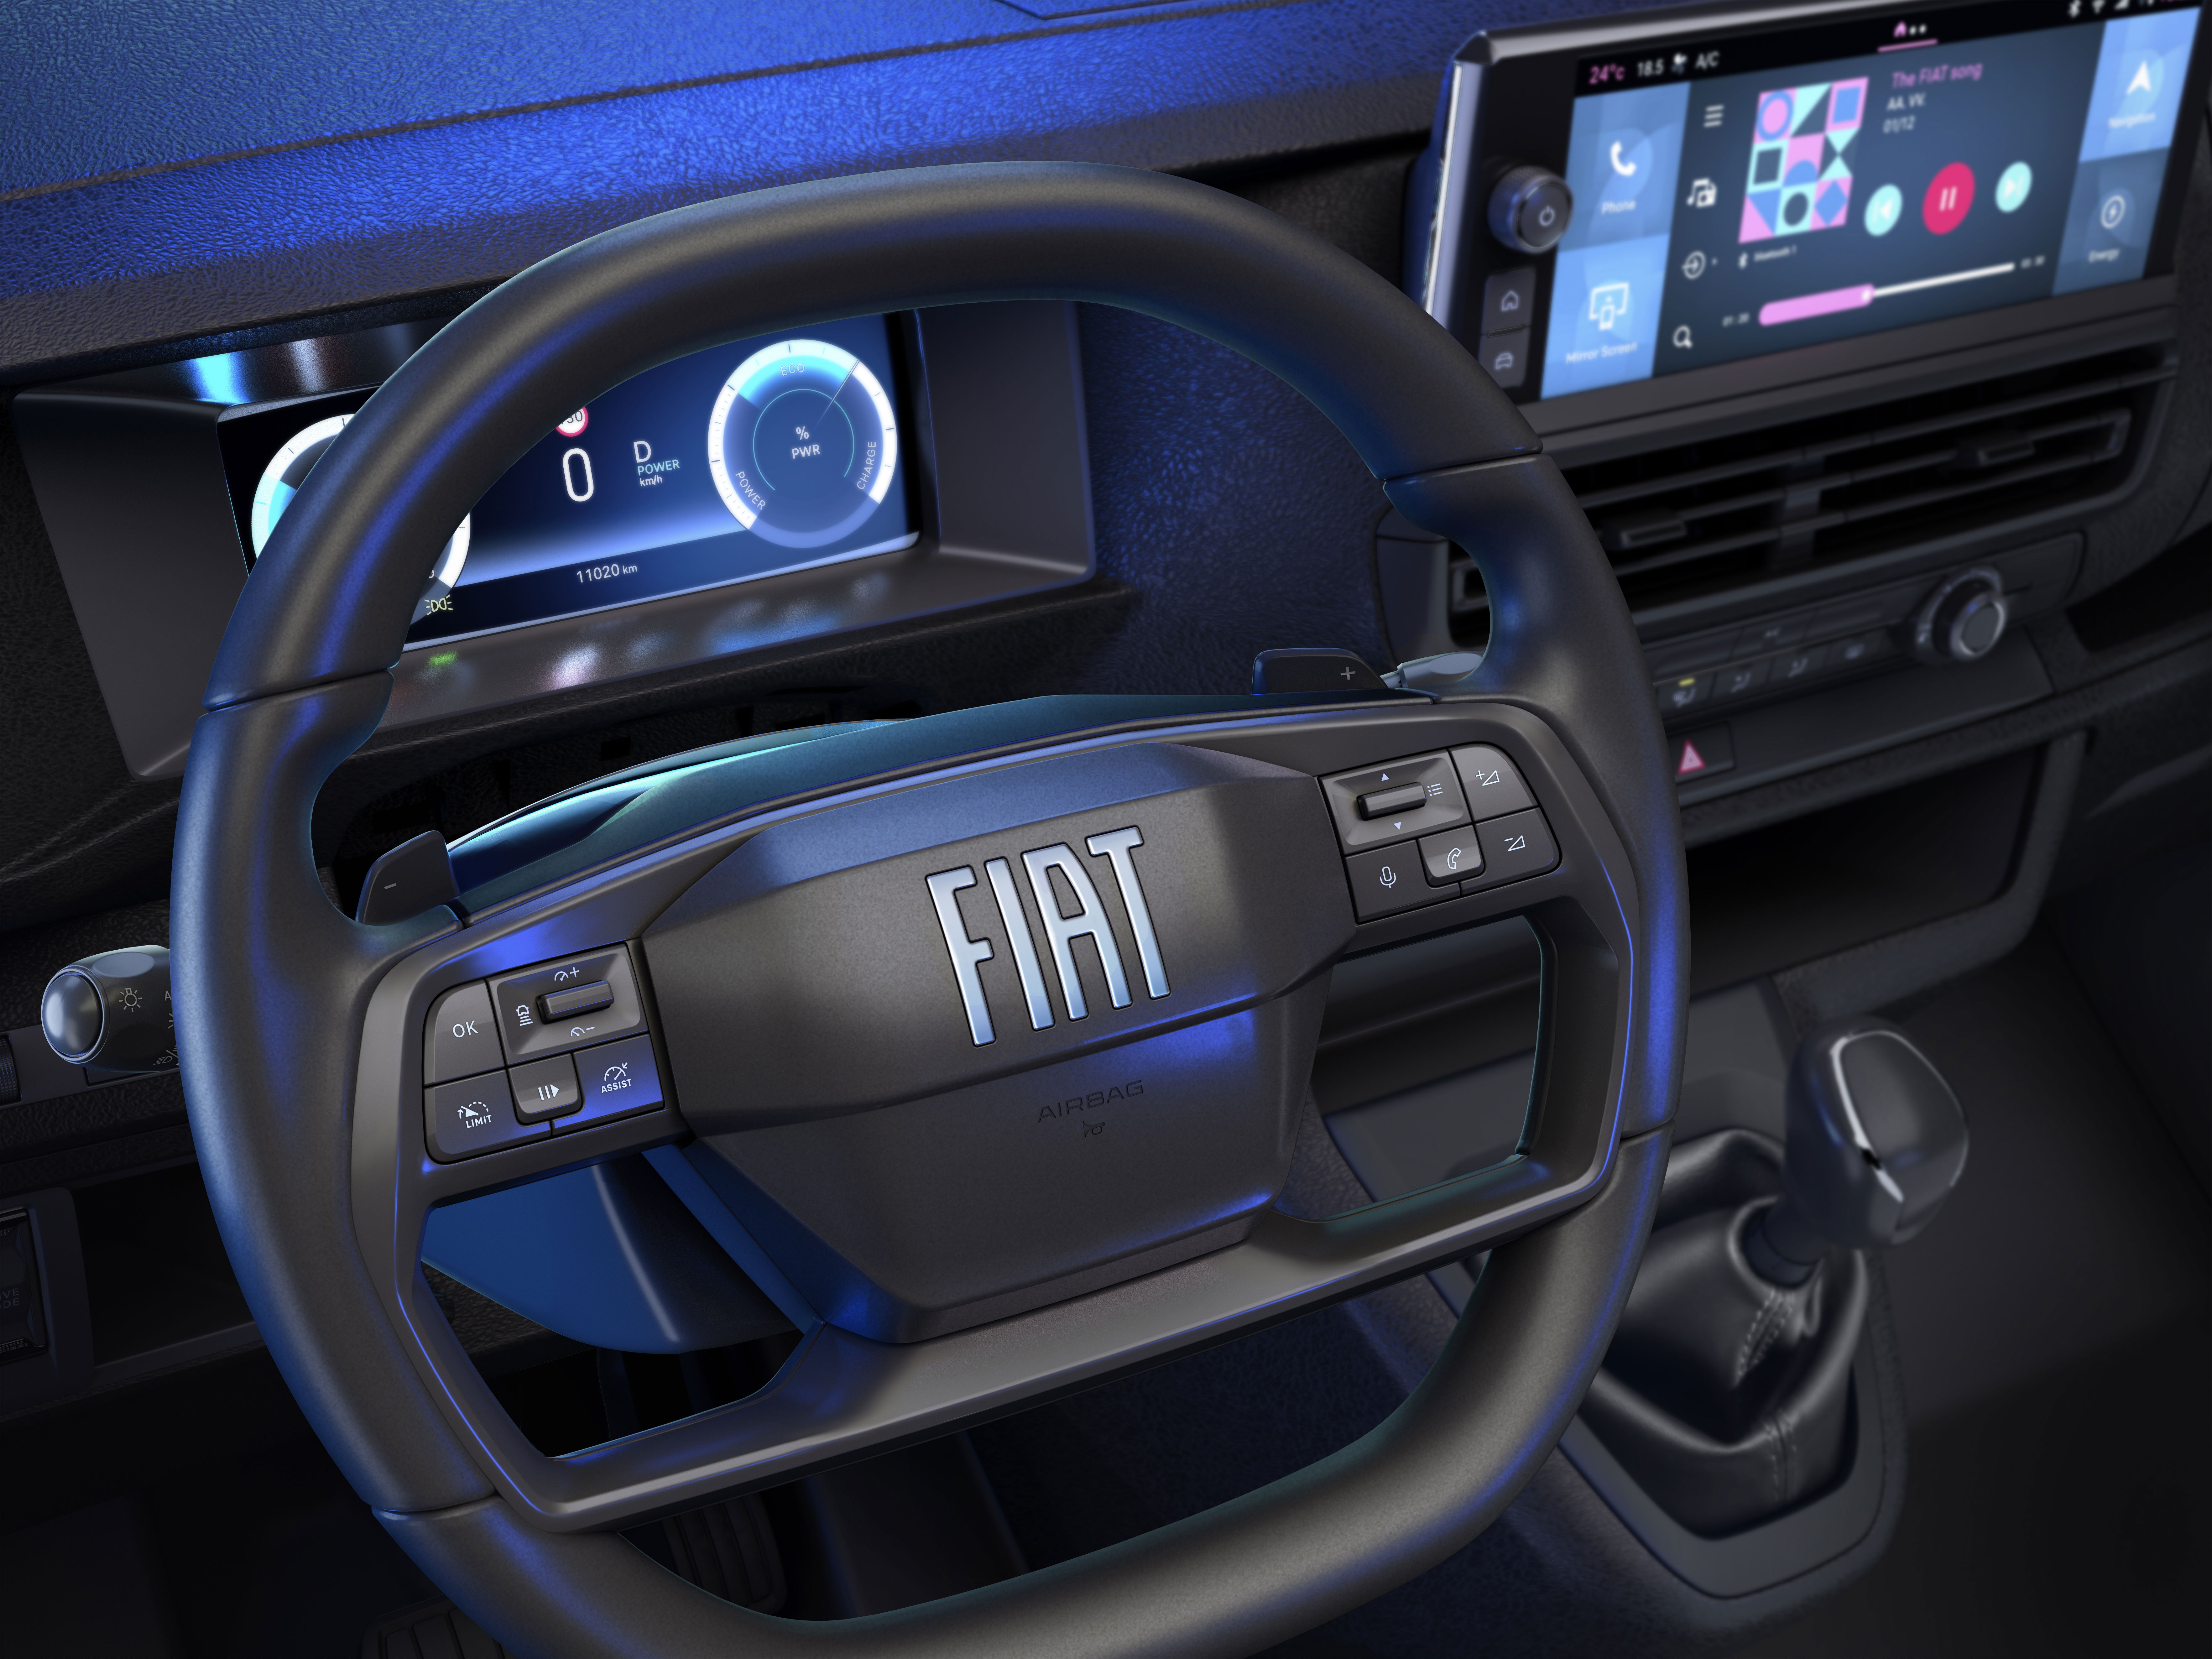 Fiat New Scudo interior.